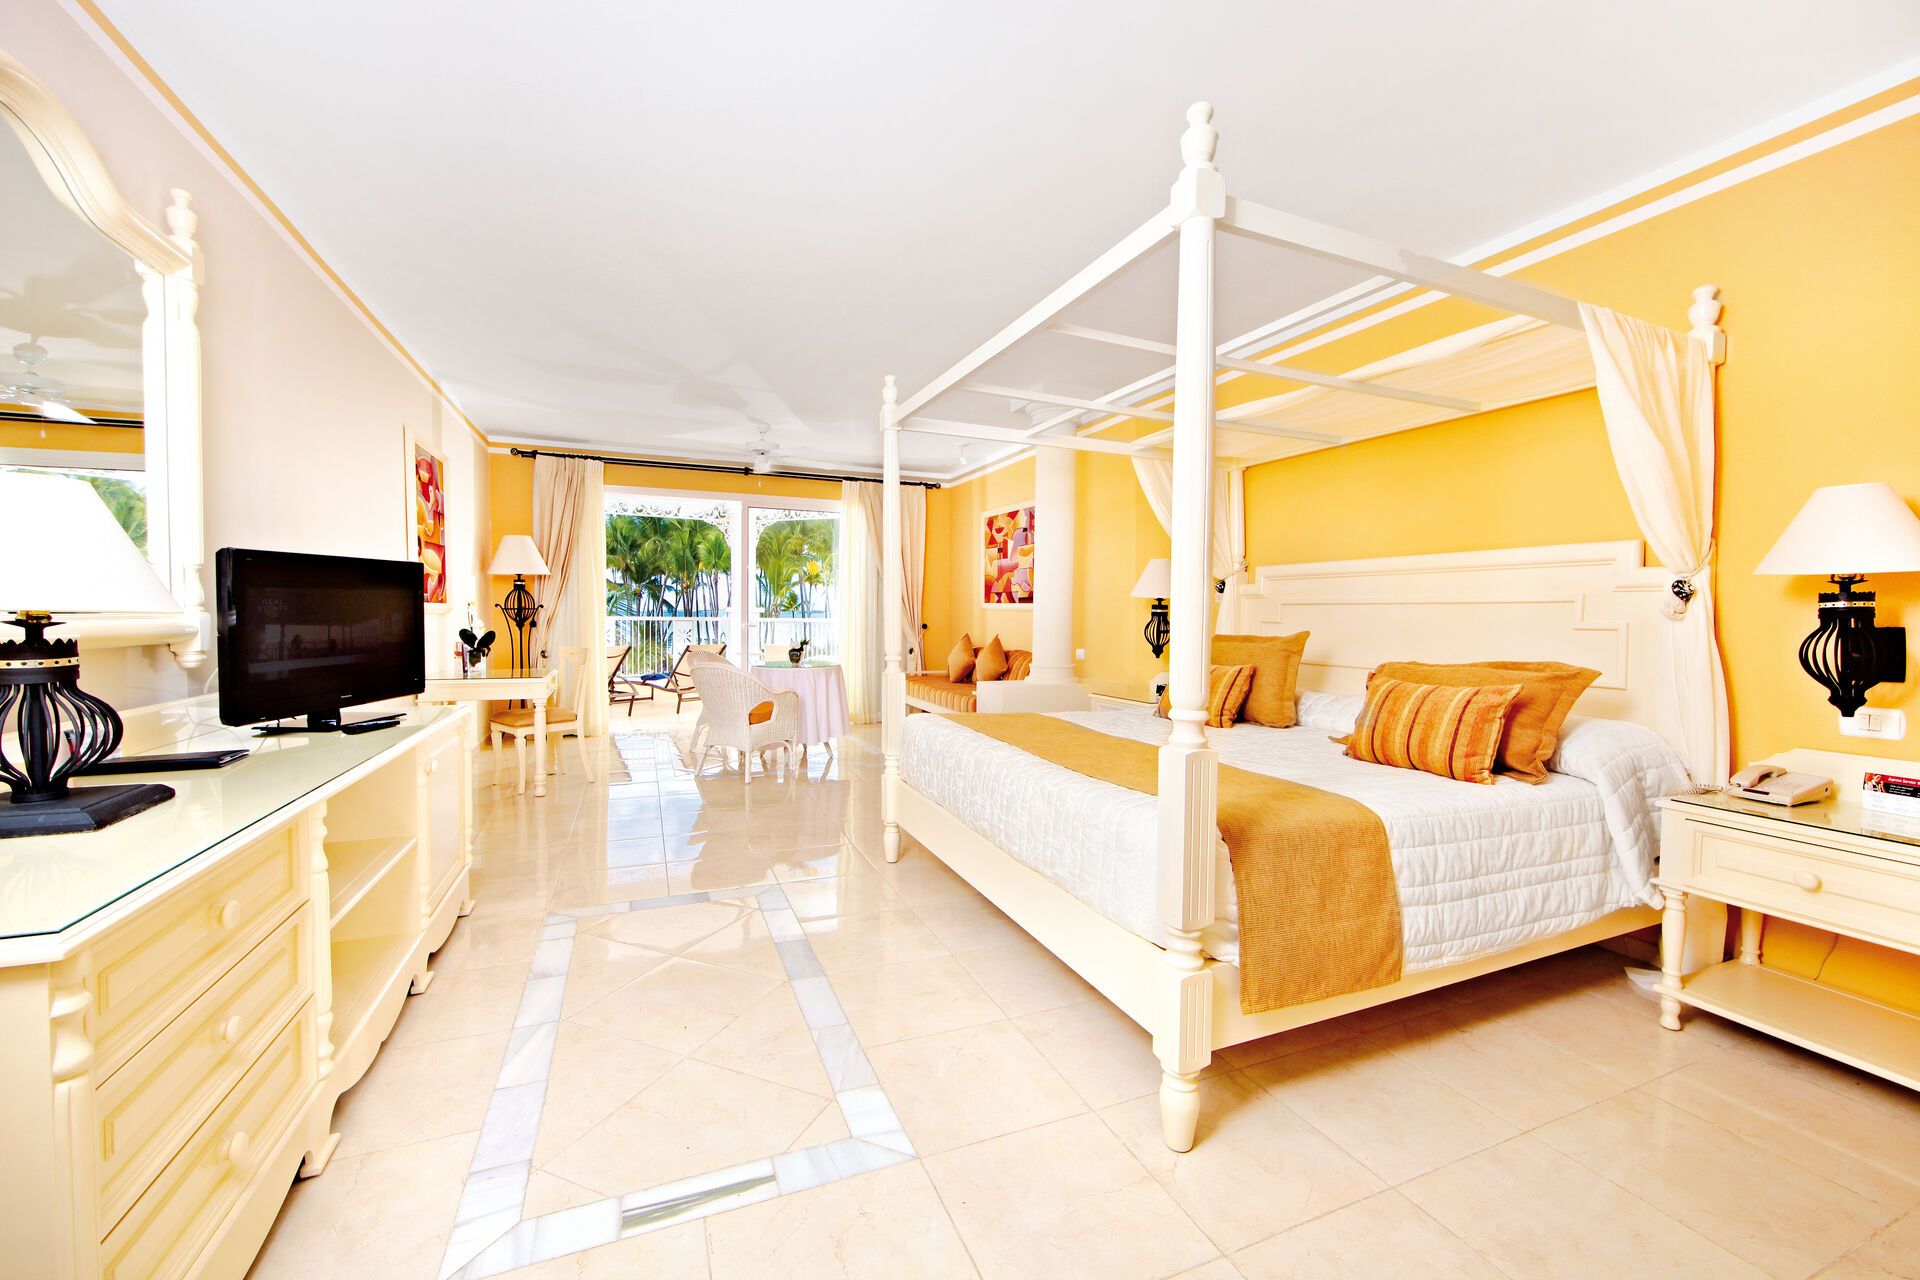 République Dominicaine - La Romana - Hôtel Bahia Principe Luxury Bouganville - Adult Only 5*